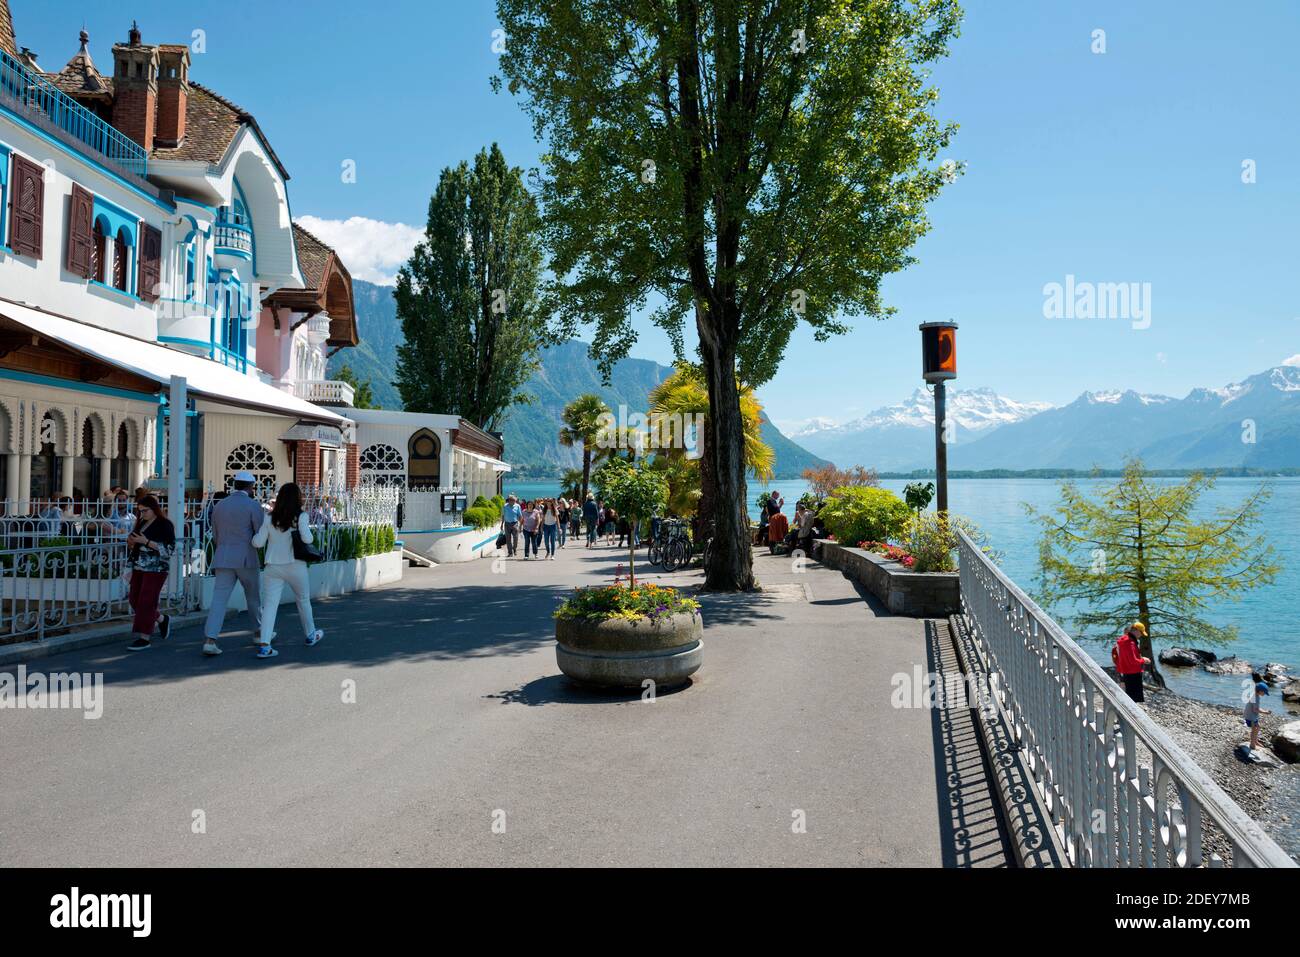 Suisse, Vaud, Waadt, Lac Léman, Genfer See, Lac Léman, Montreux, ville, Stadt, ville, les quais, les quais Banque D'Images